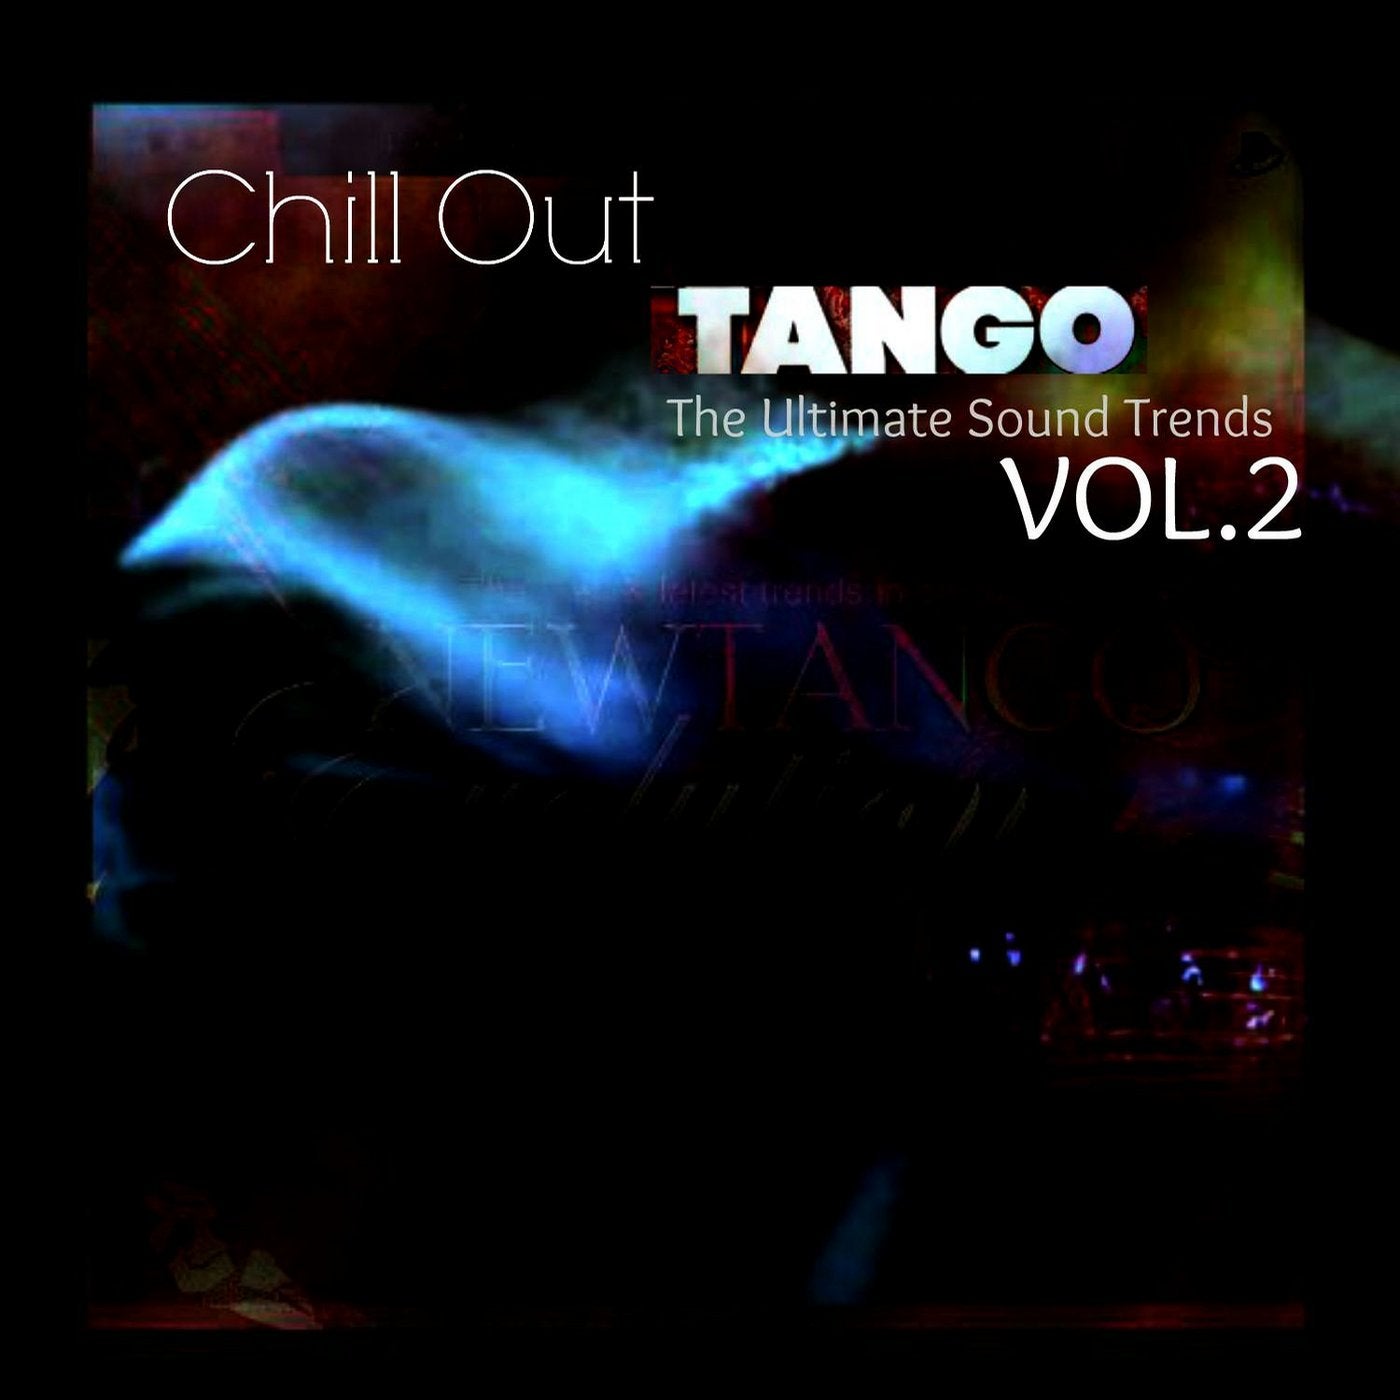 Chillout Tango, Vol. 2